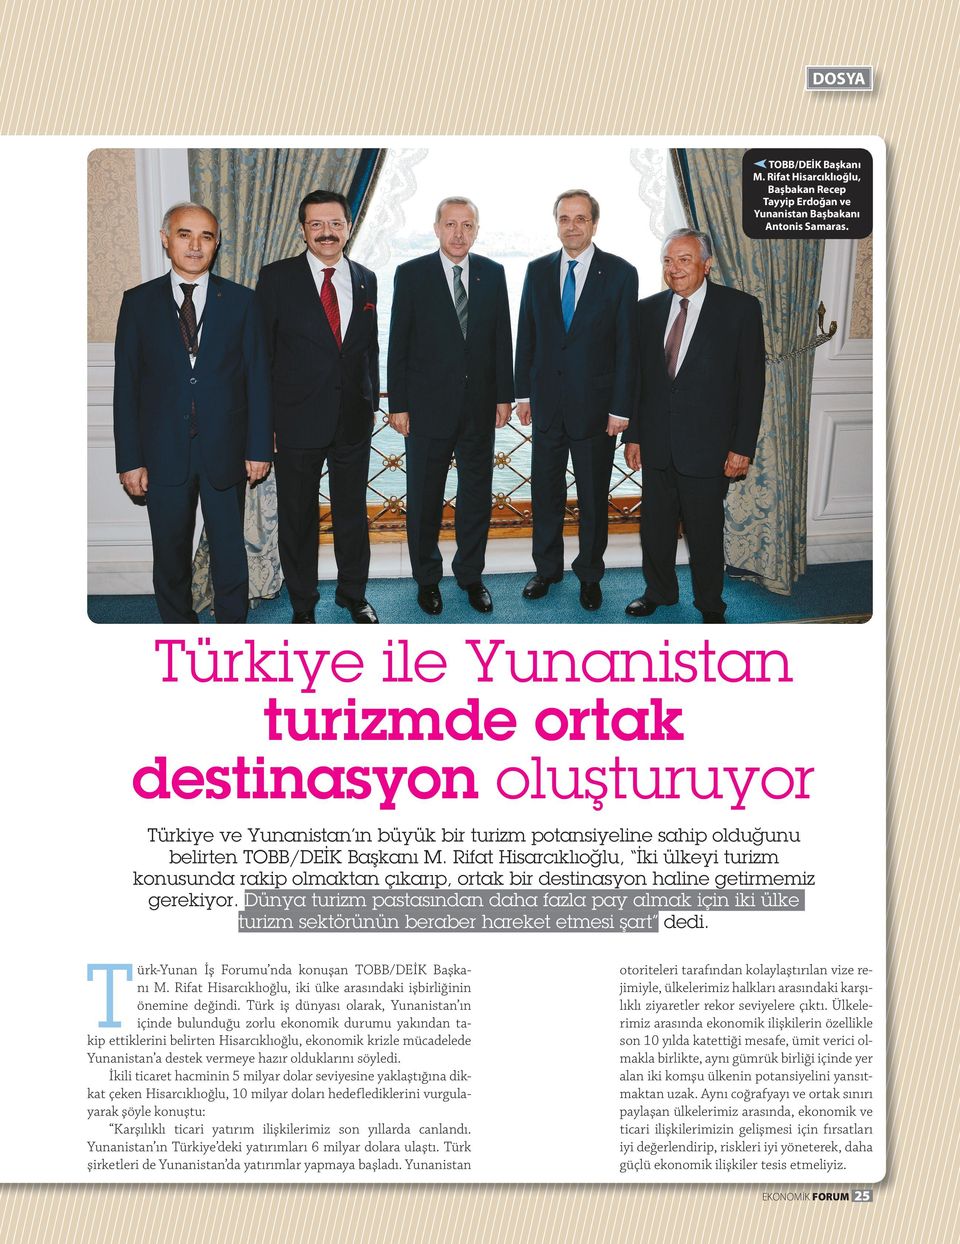 Rifat Hisarcıklıoğlu, İki ülkeyi turizm konusunda rakip olmaktan çıkarıp, ortak bir destinasyon haline getirmemiz gerekiyor.